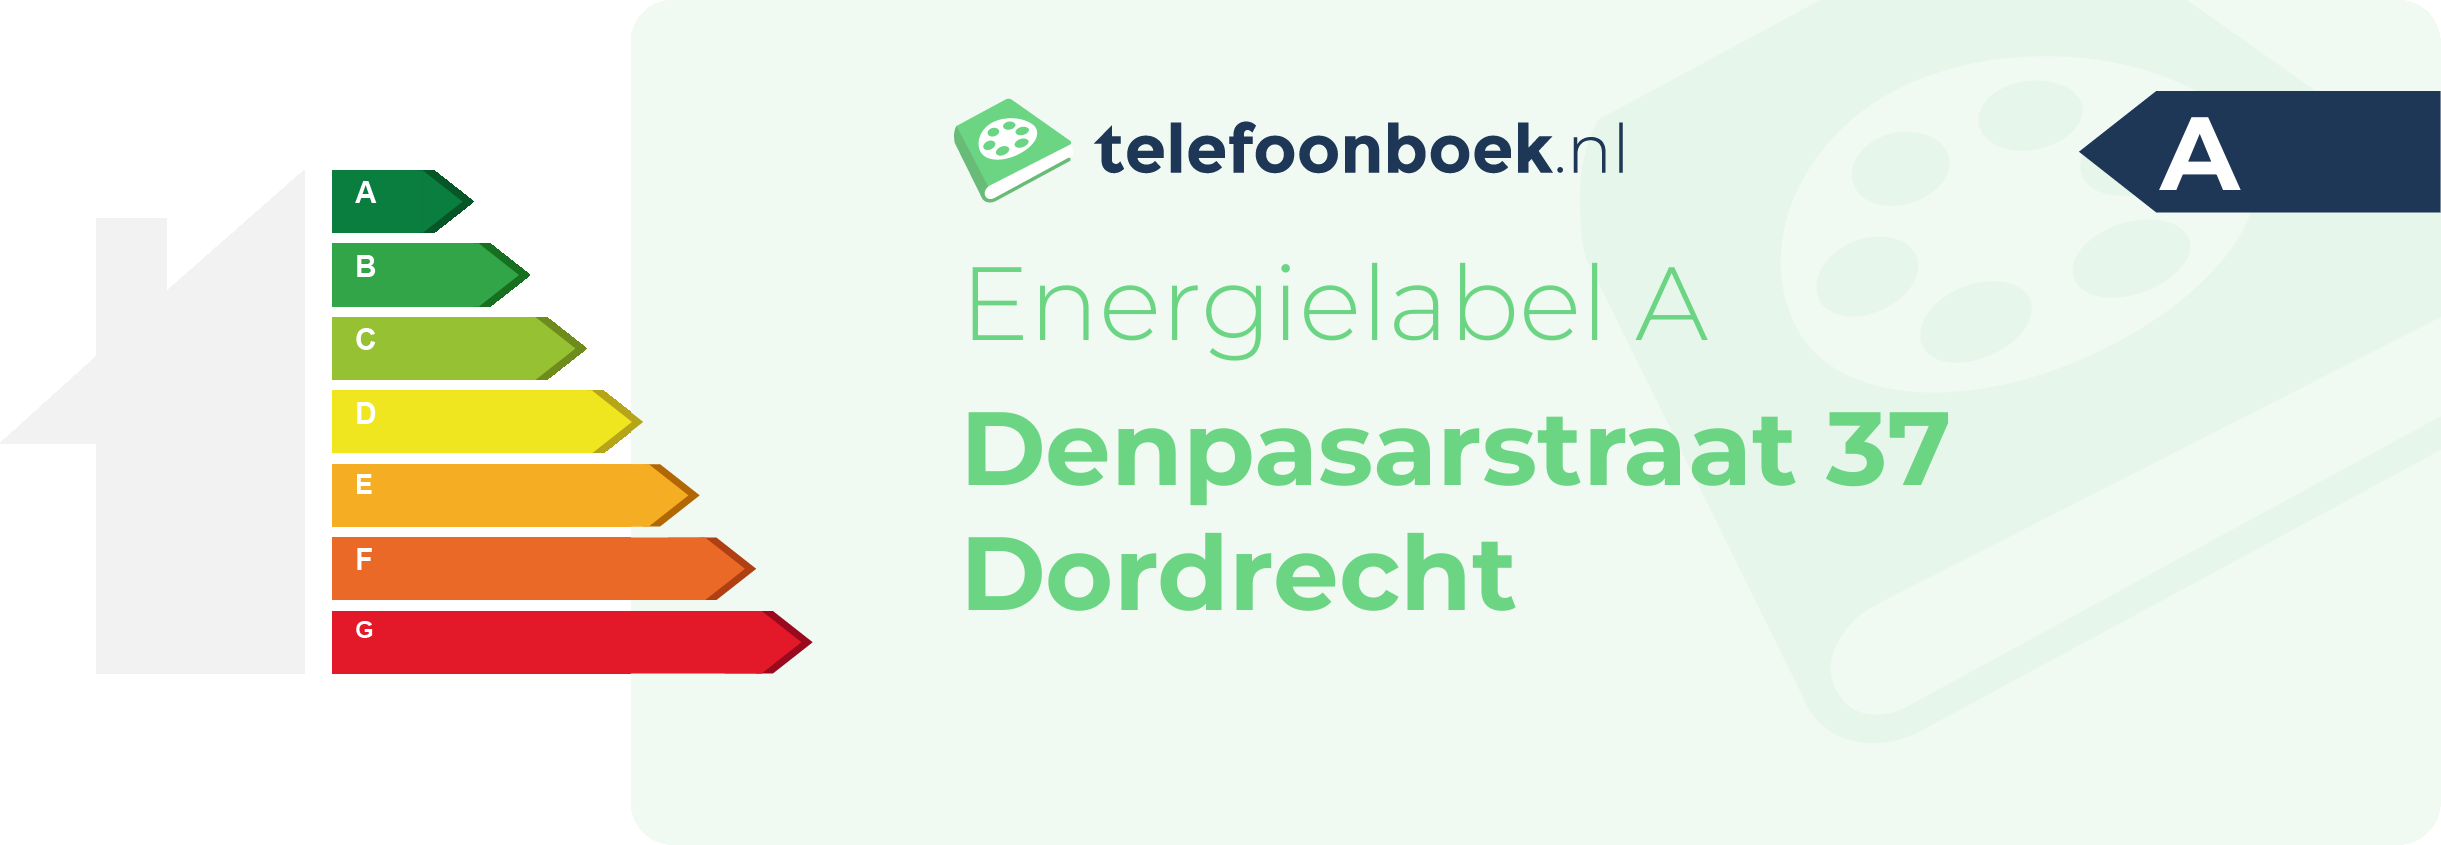 Energielabel Denpasarstraat 37 Dordrecht